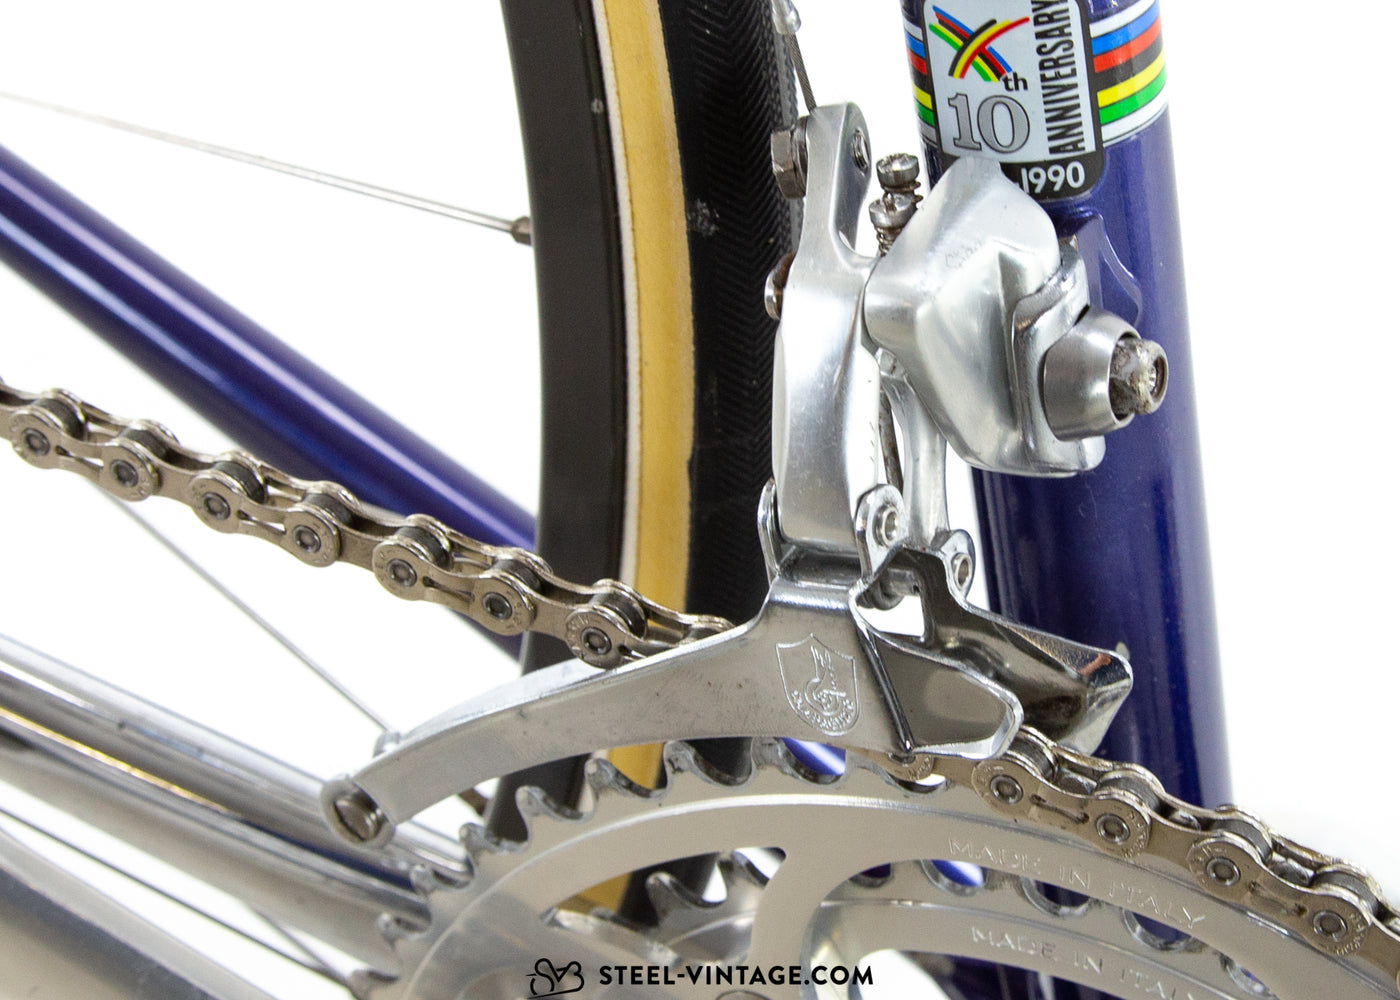 Eddy Merckx Corsa Extra 10-jähriges Jubiläum Rennrad 1980s